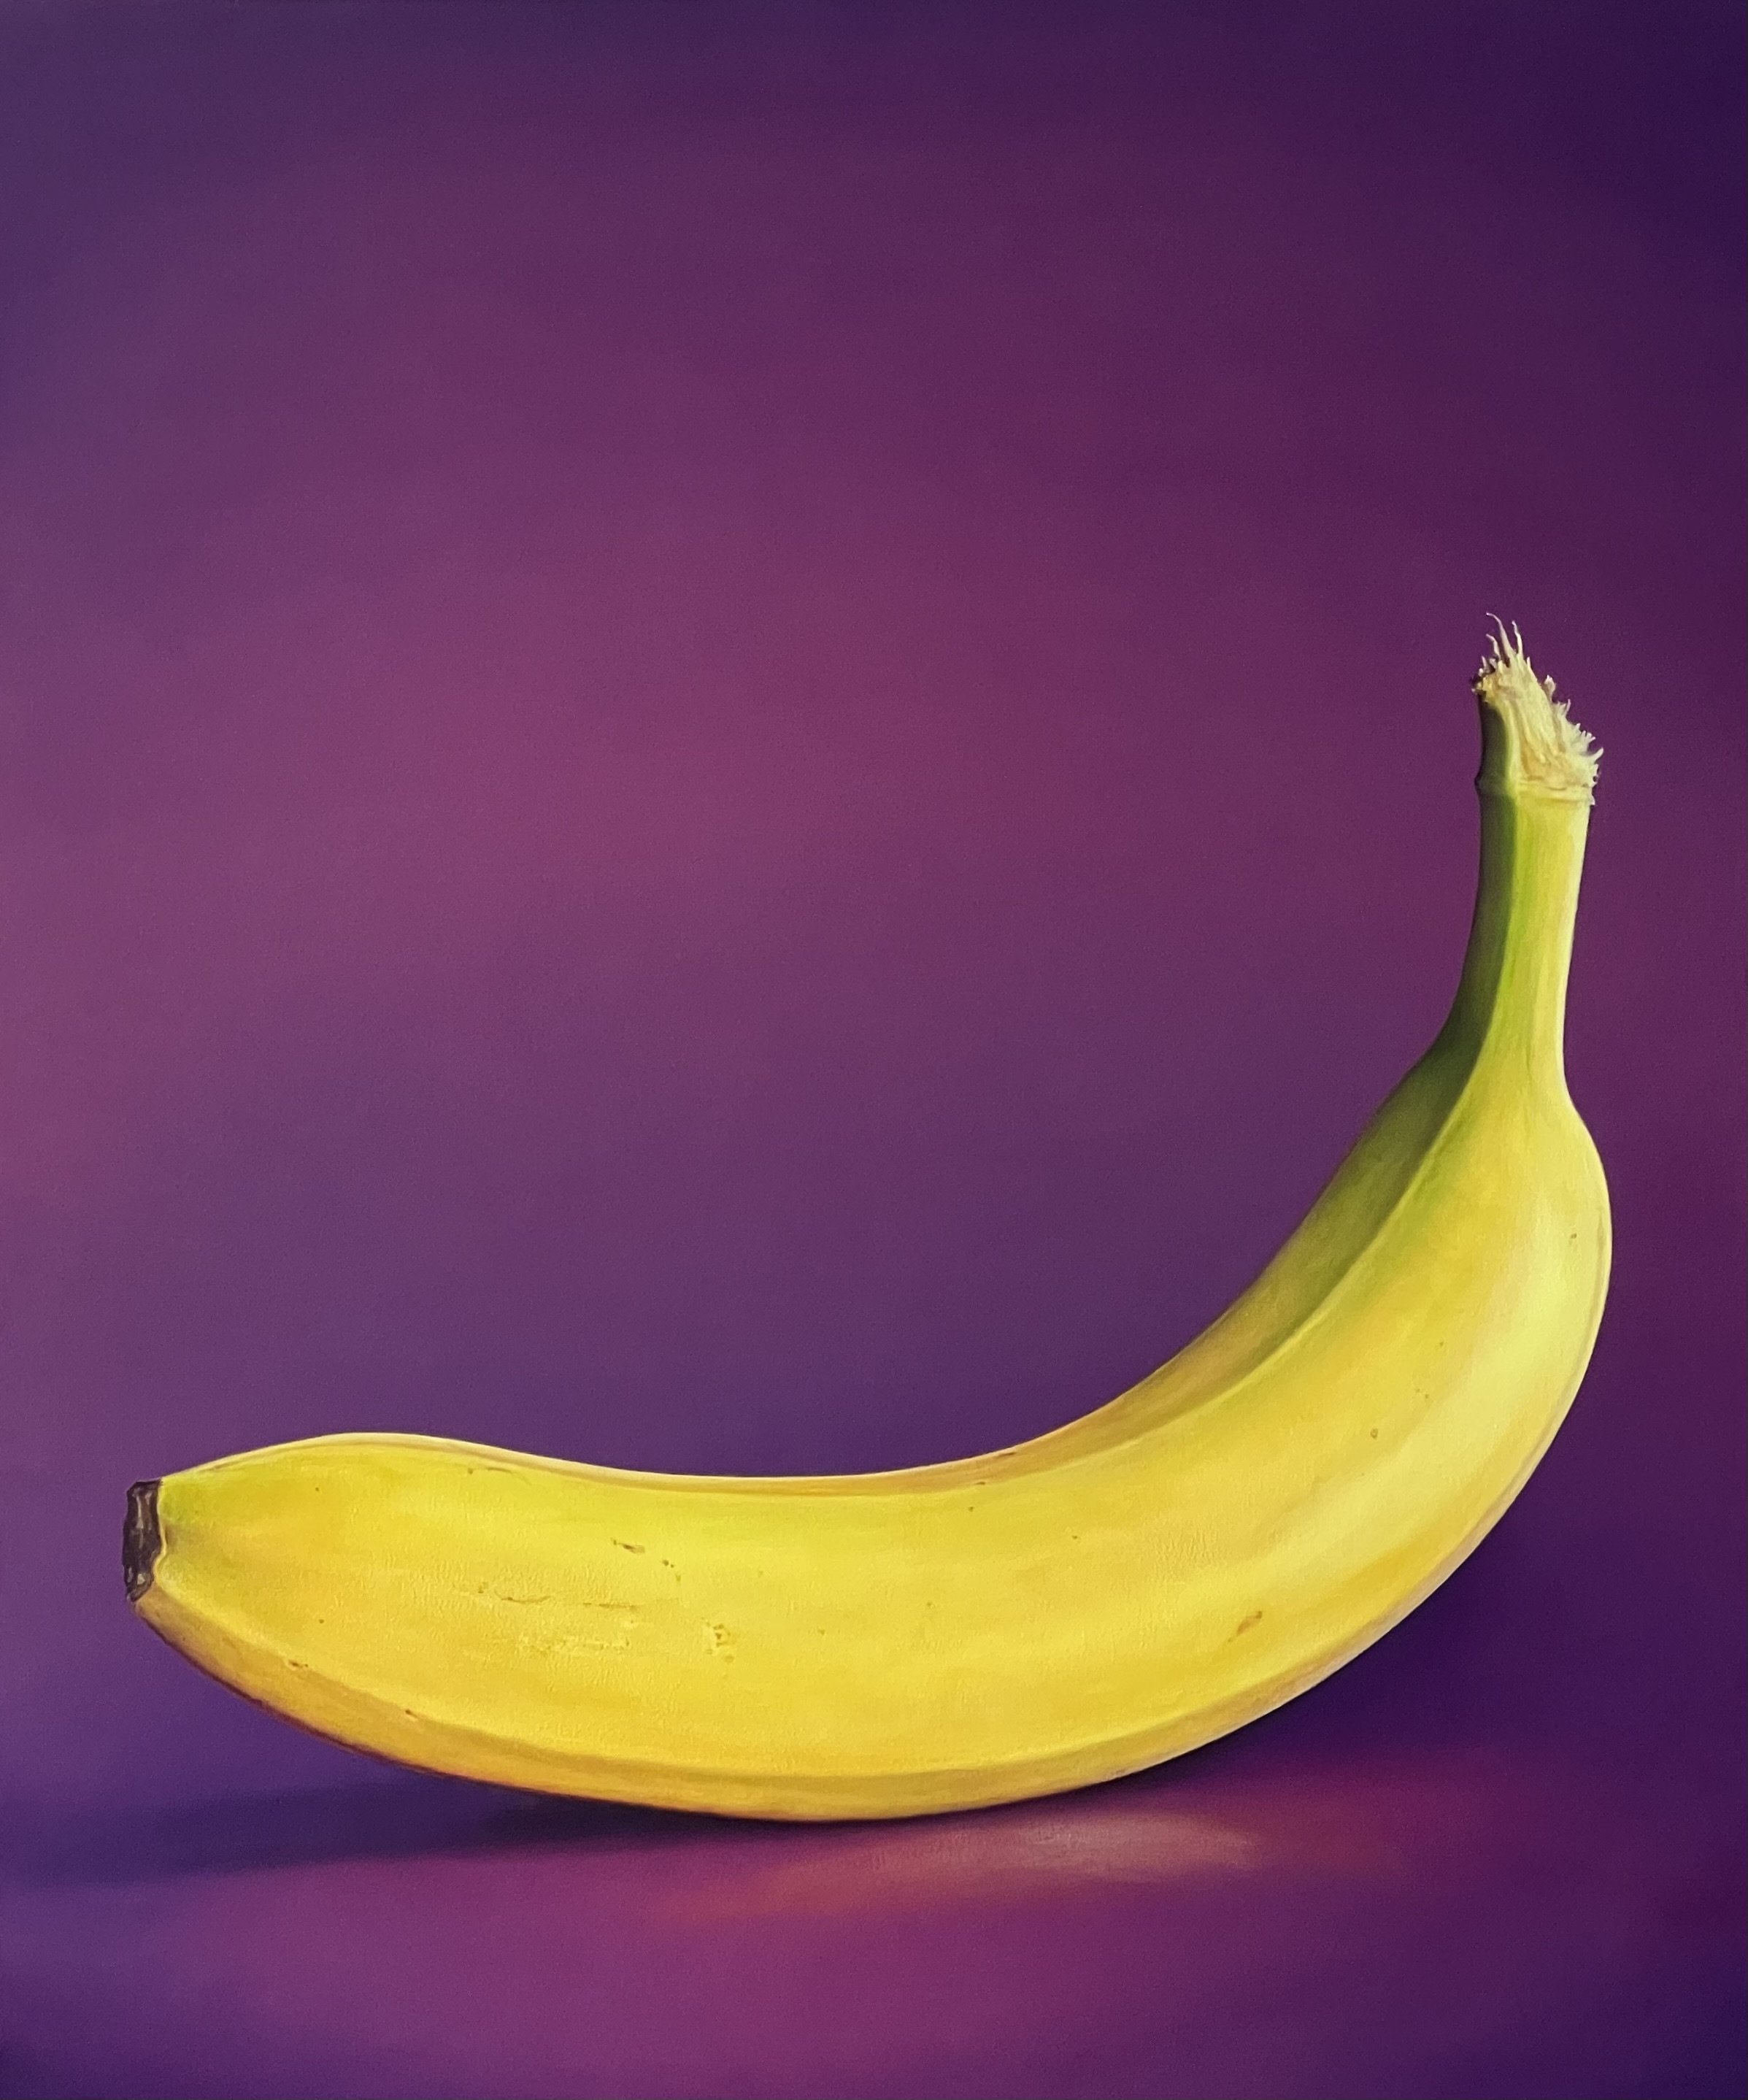 Semi Ripe Banana on Violet (sold)